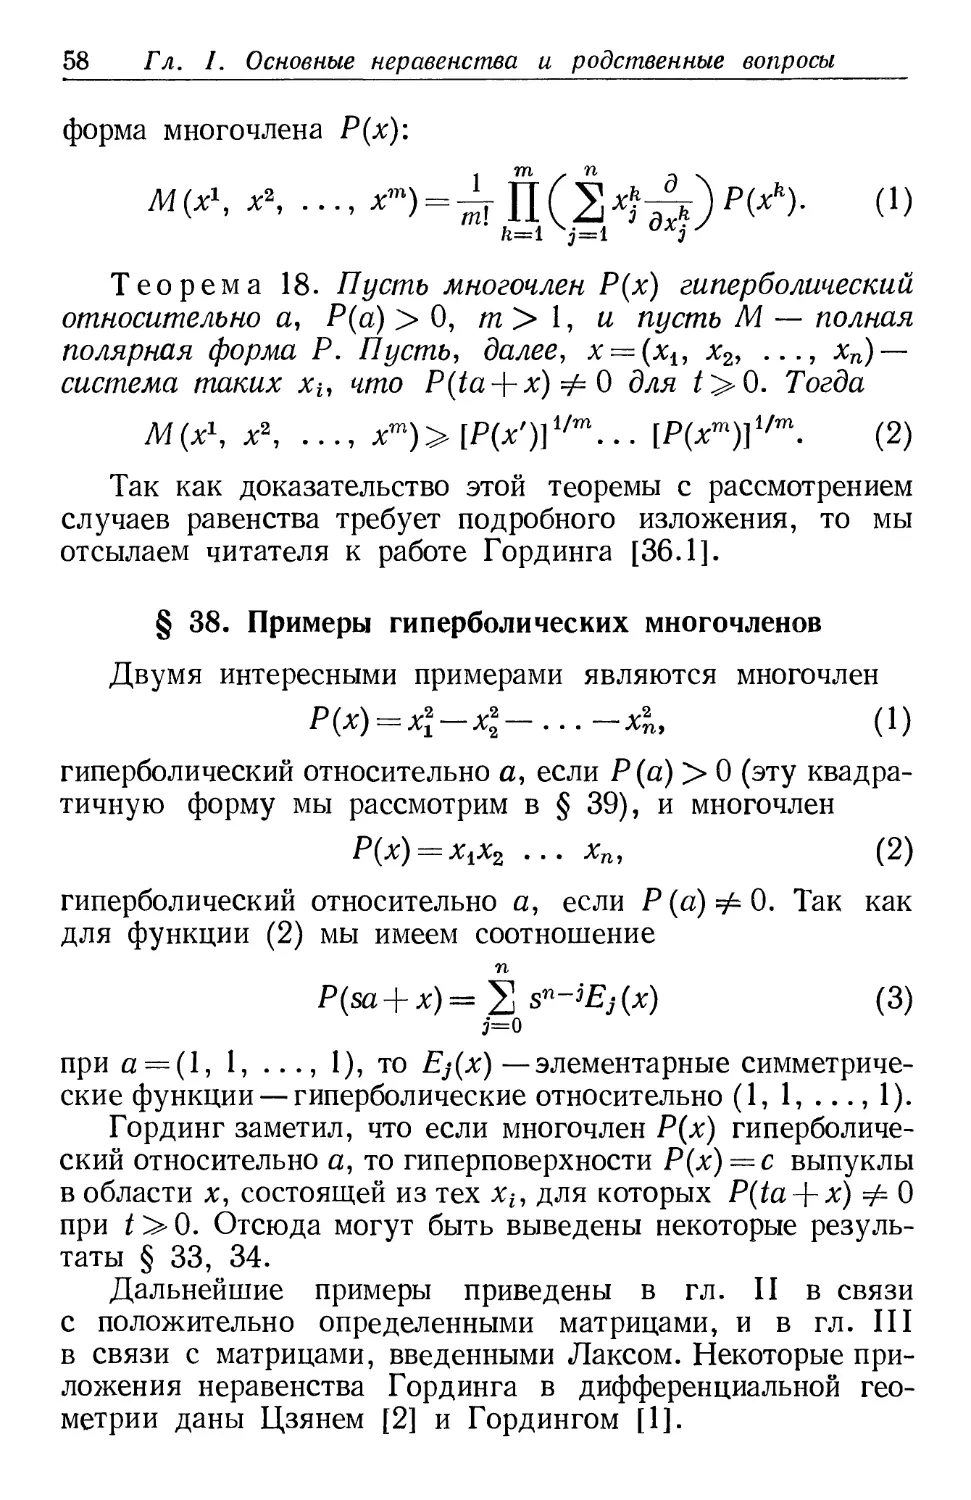 § 38. Примеры гиперболических многочленов